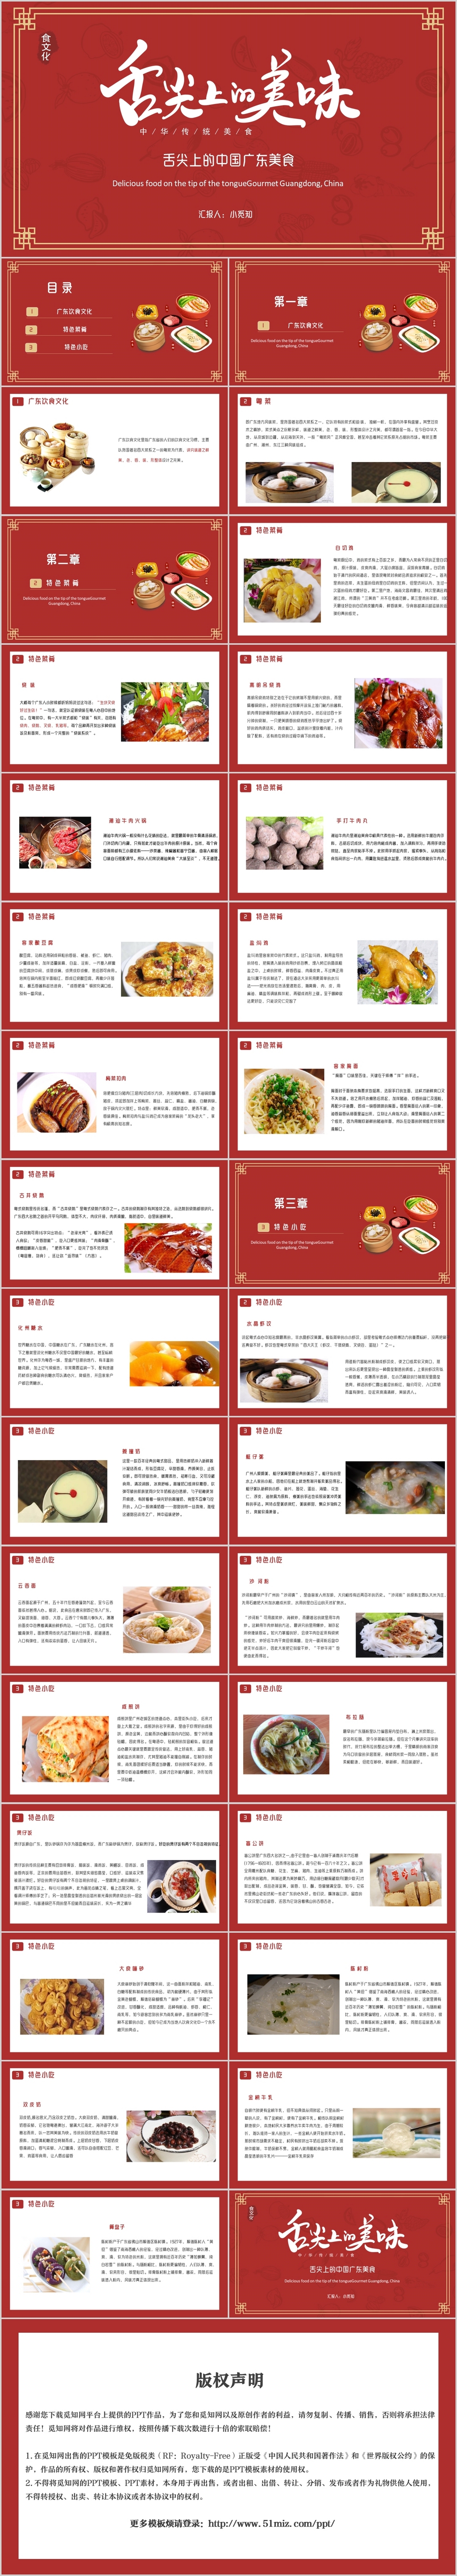 舌尖上的美食中国美食文化广东美食小吃介绍PPT模板